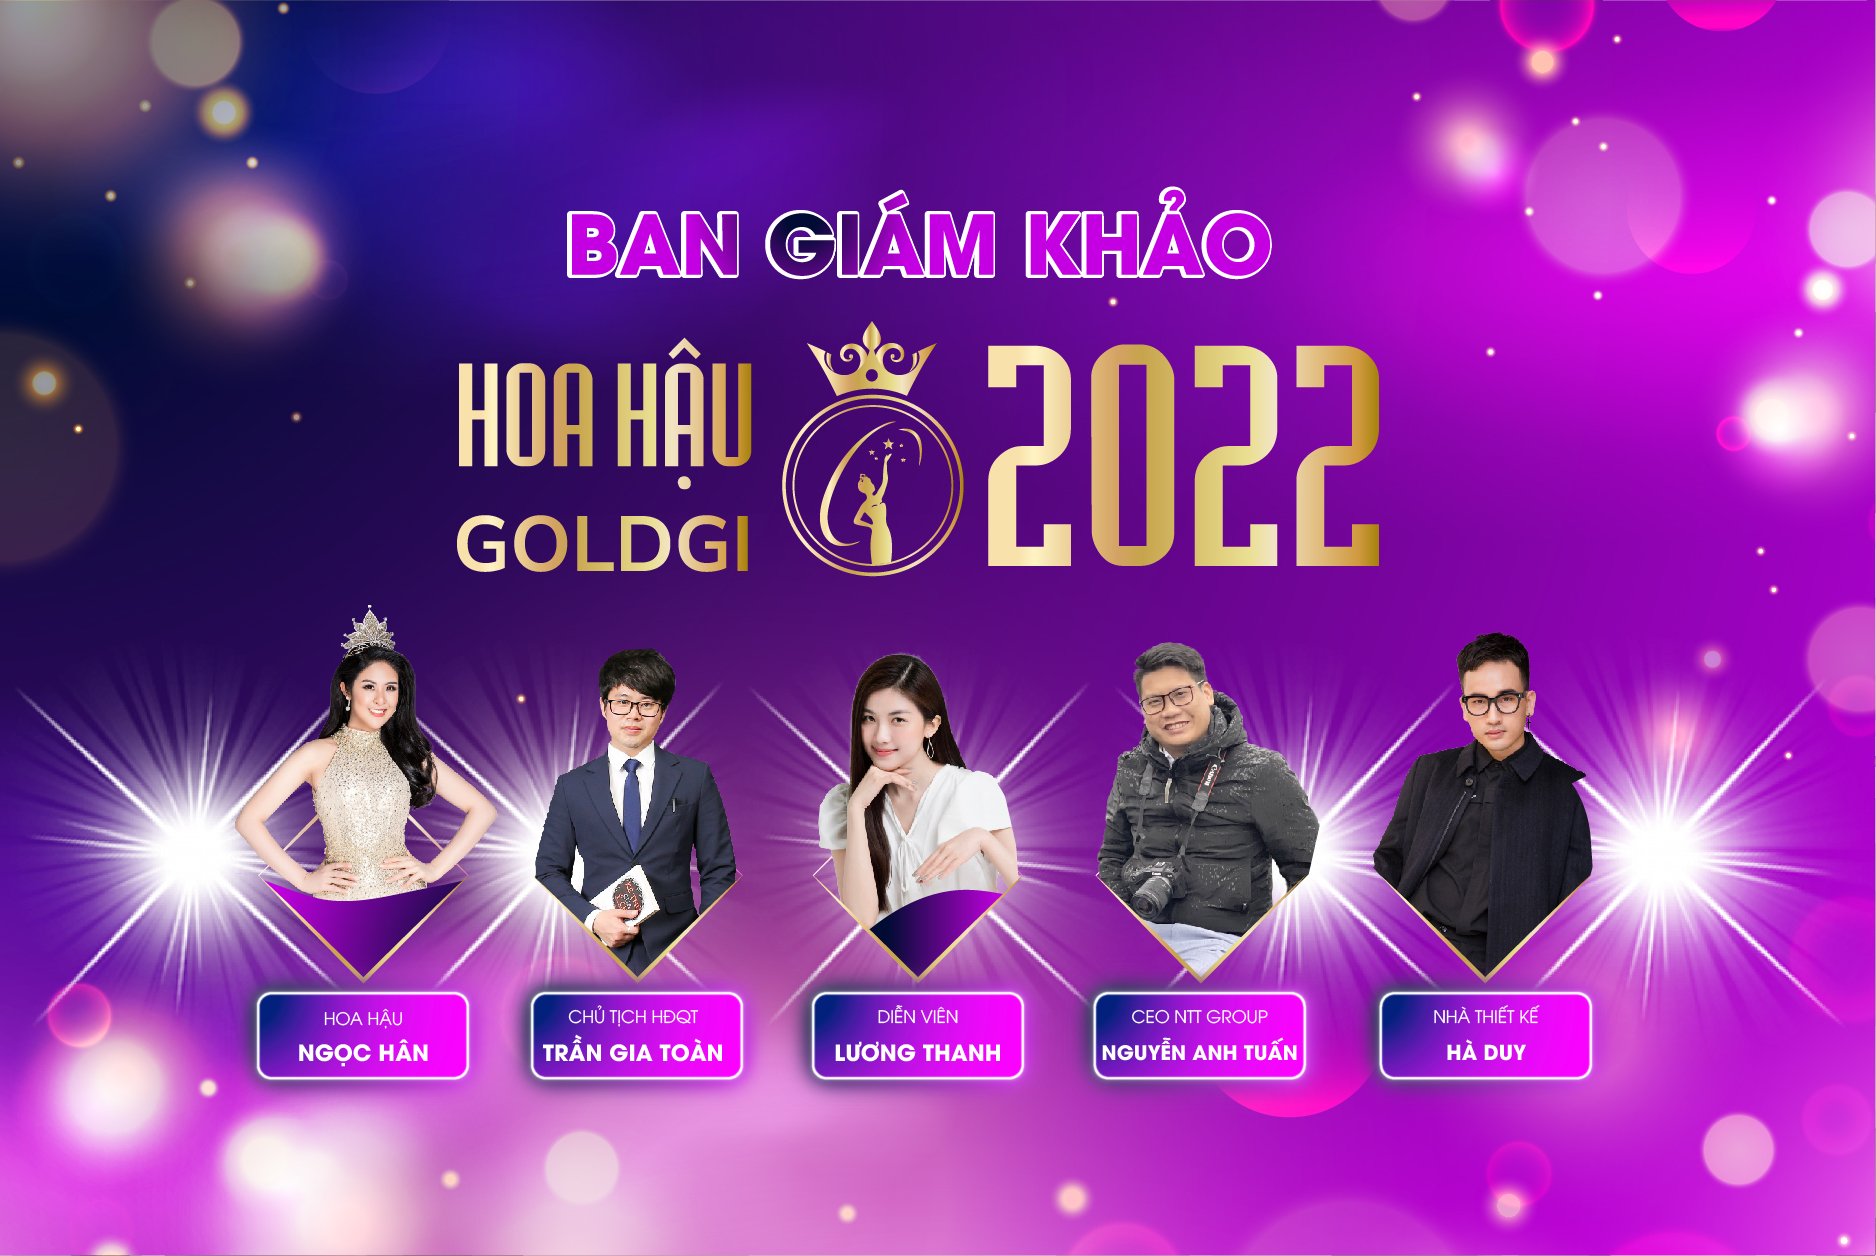 Lộ diện Ban giám khảo cuộc thi Hoa hậu Goldgi 2022